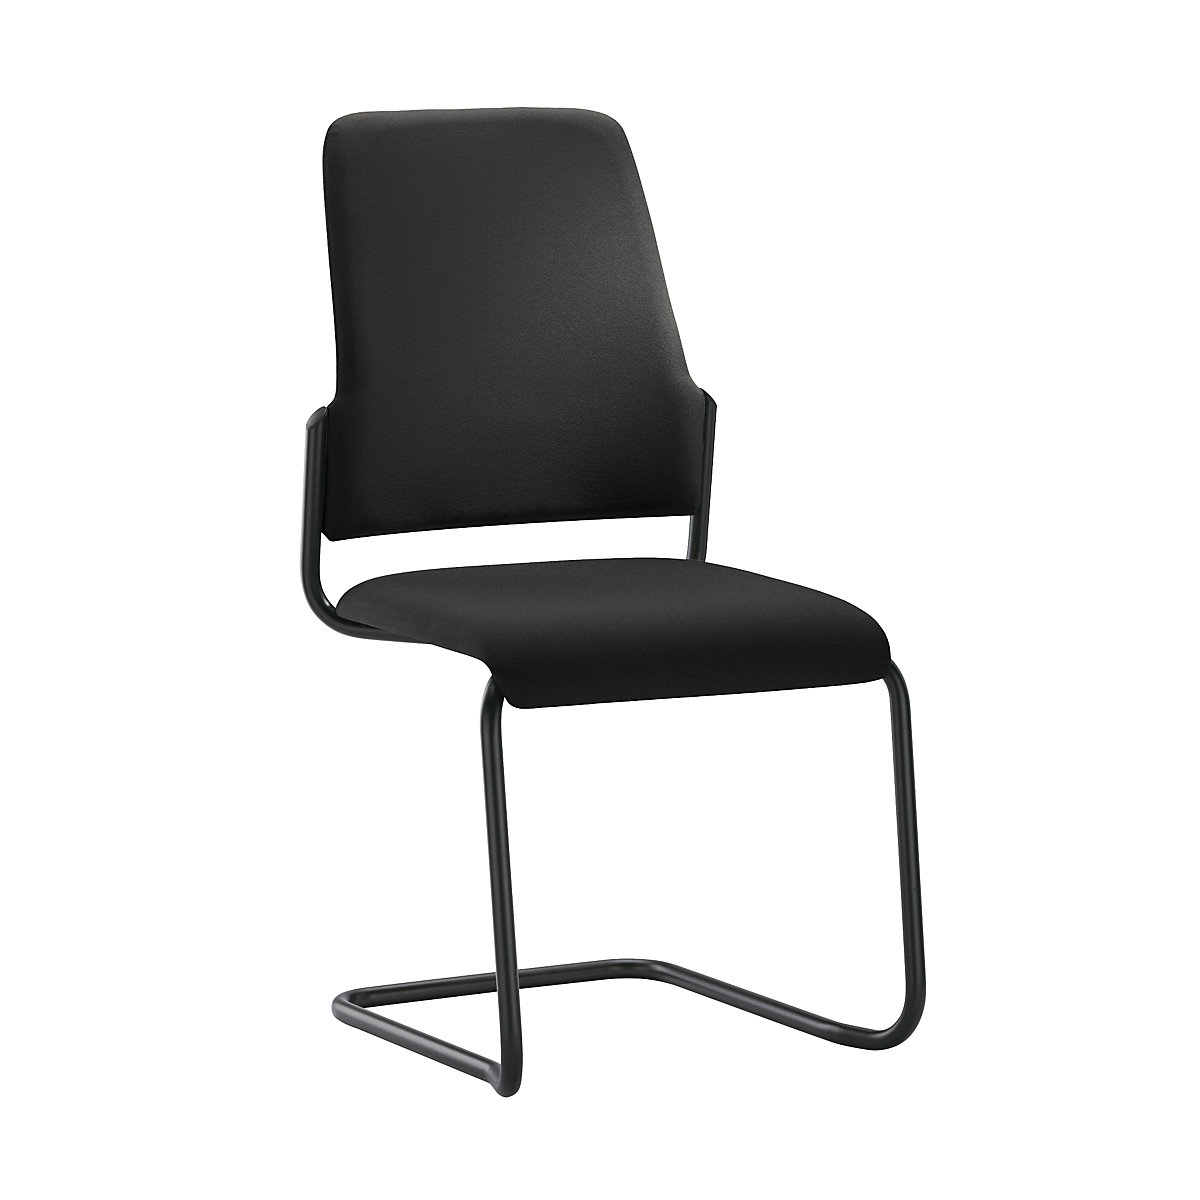 GOAL visitors' chair, cantilever, pack of 2 – interstuhl, frame black, black-5